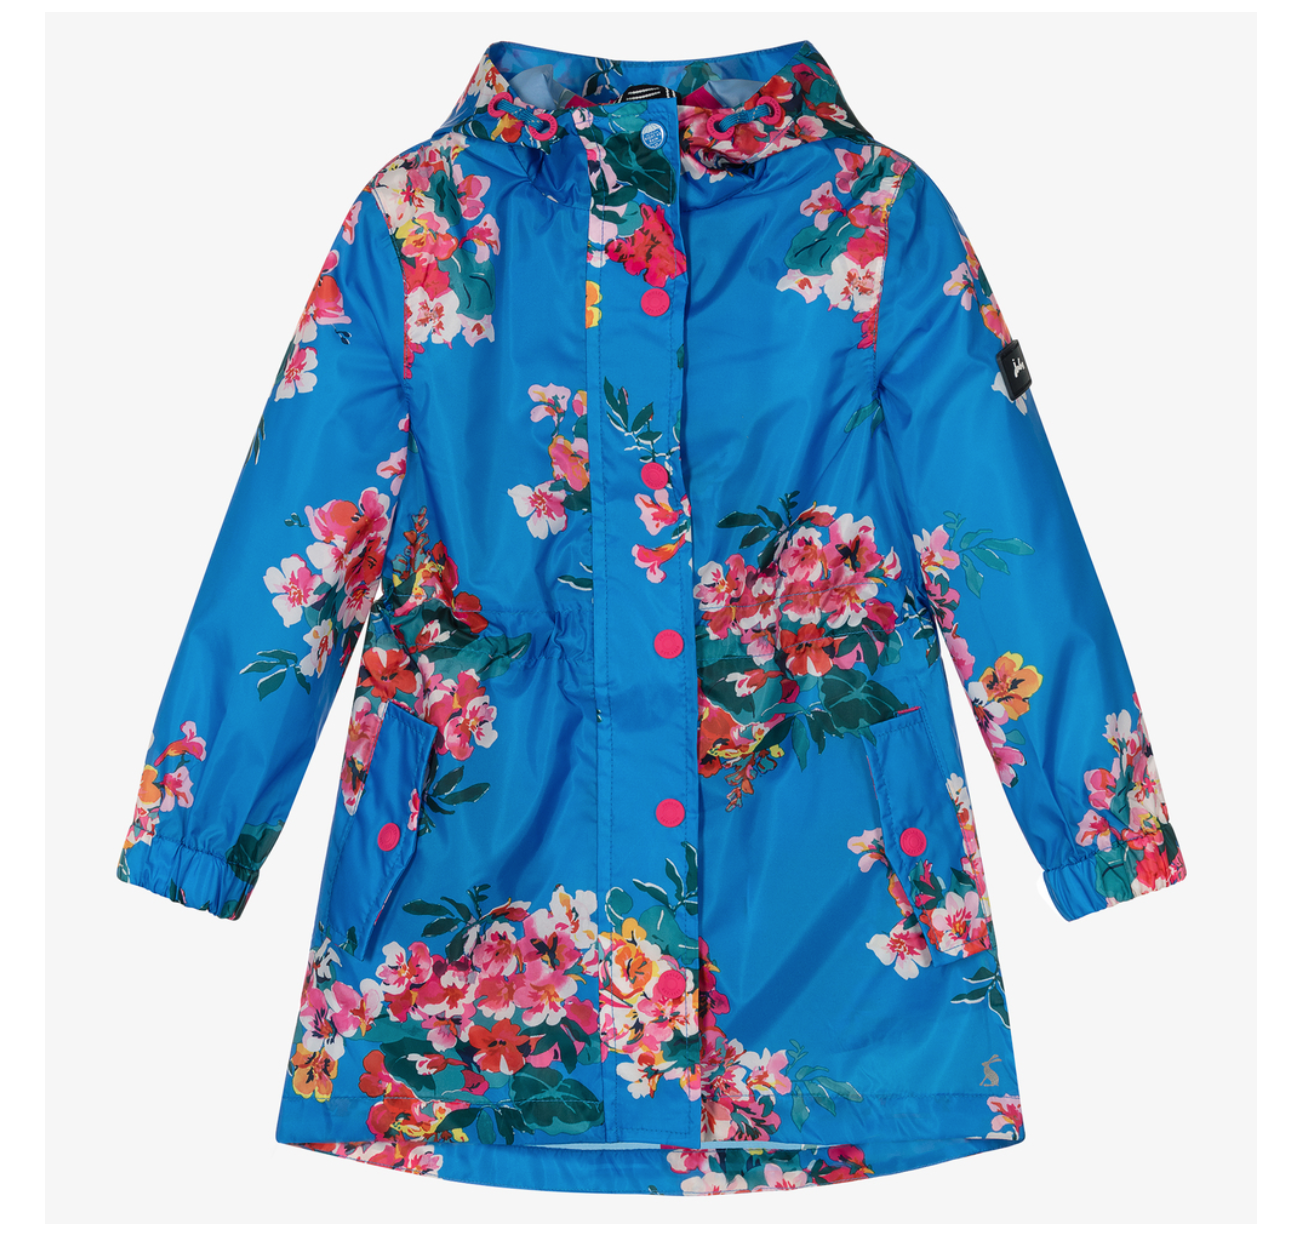 Joules Girls Blue Floral Raincoat